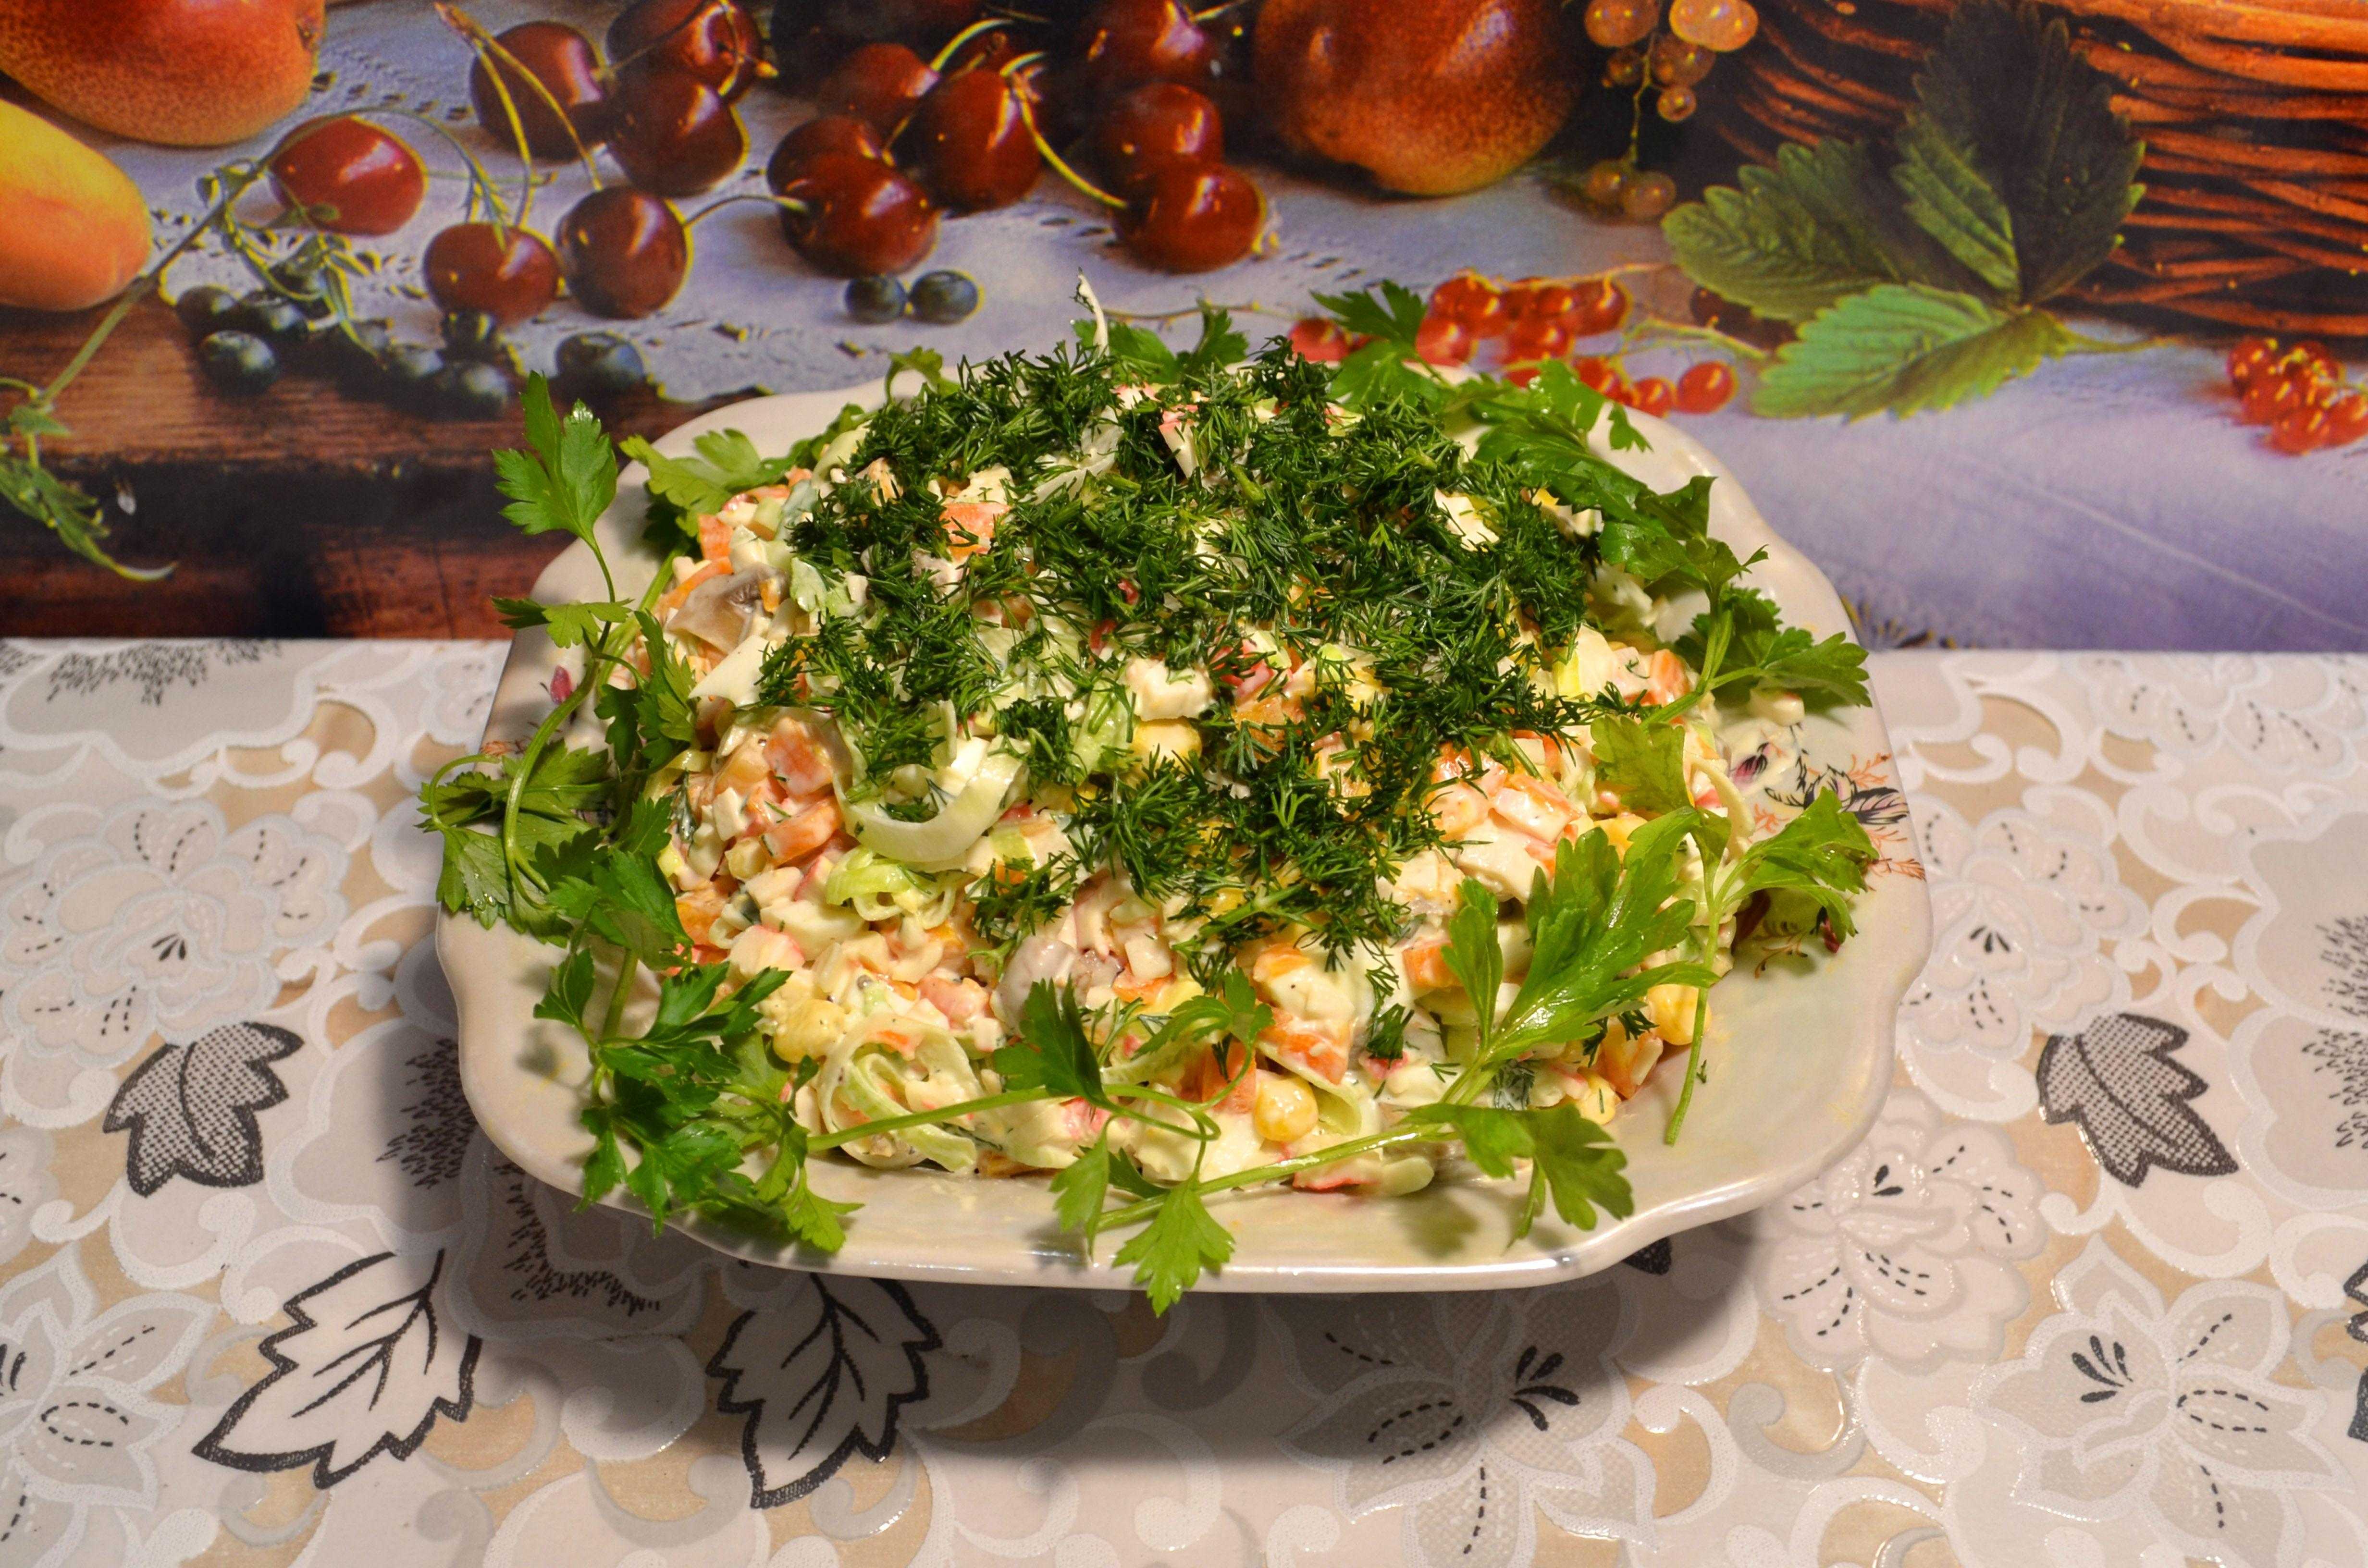 Как быстро похудеть: пошаговые рецепты фитнес салатов с фото - smak.ua